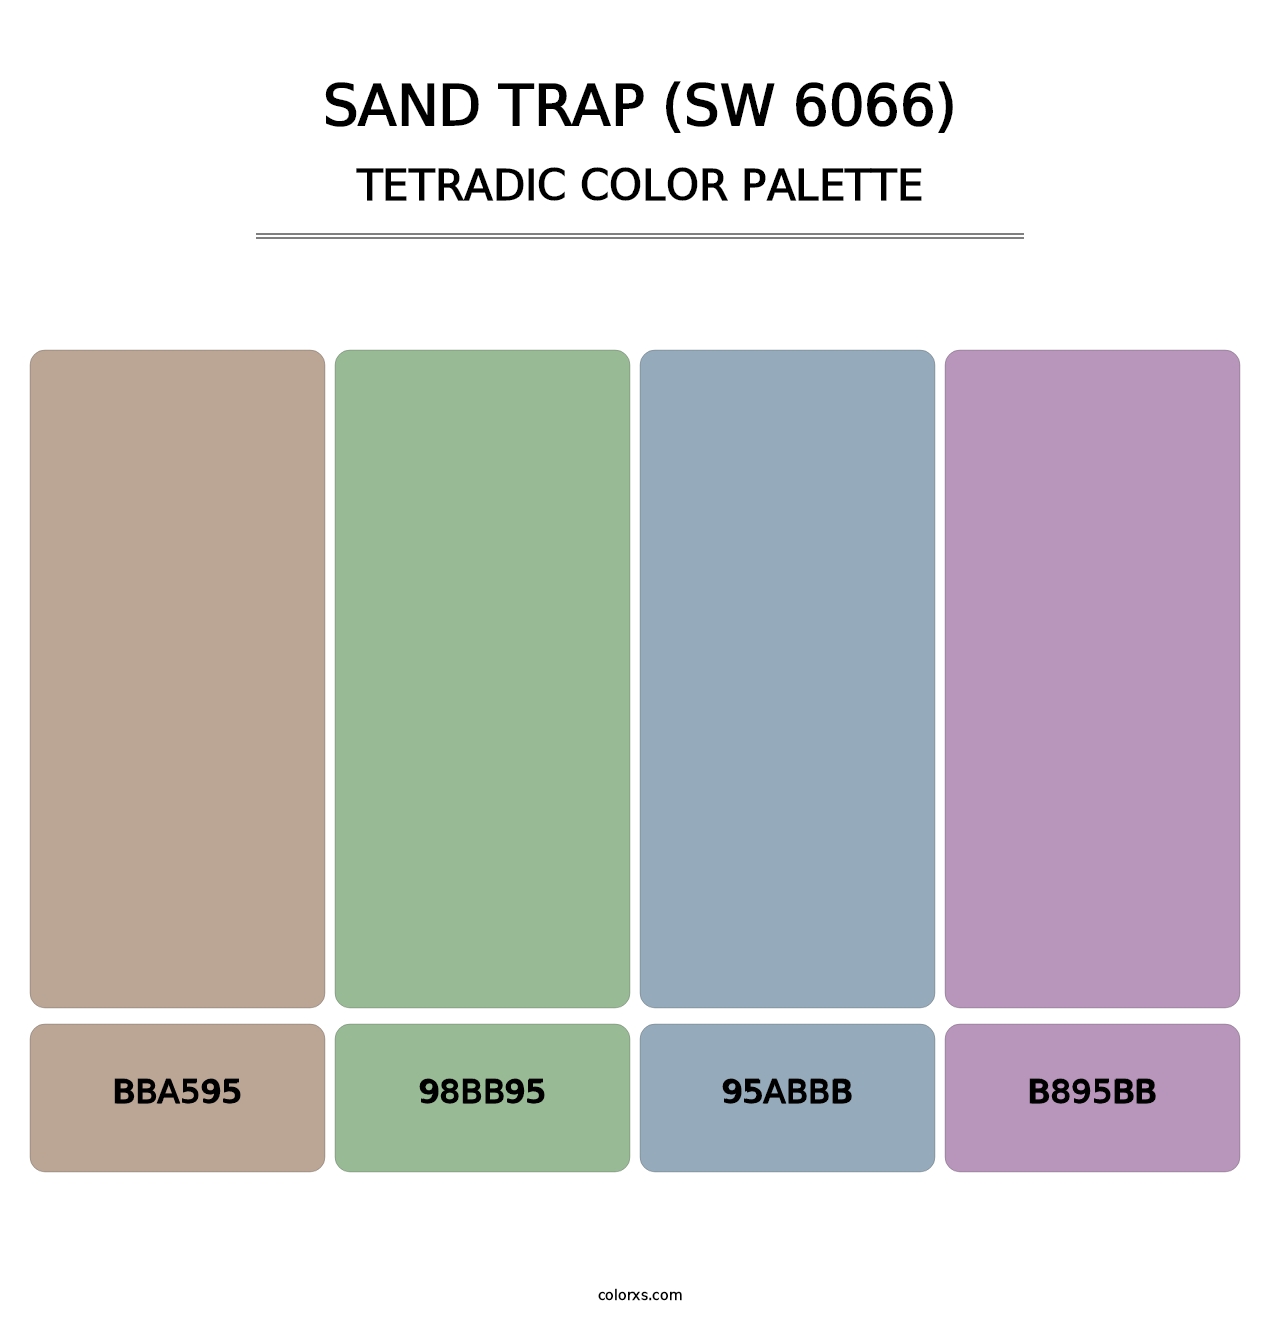 Sand Trap (SW 6066) - Tetradic Color Palette